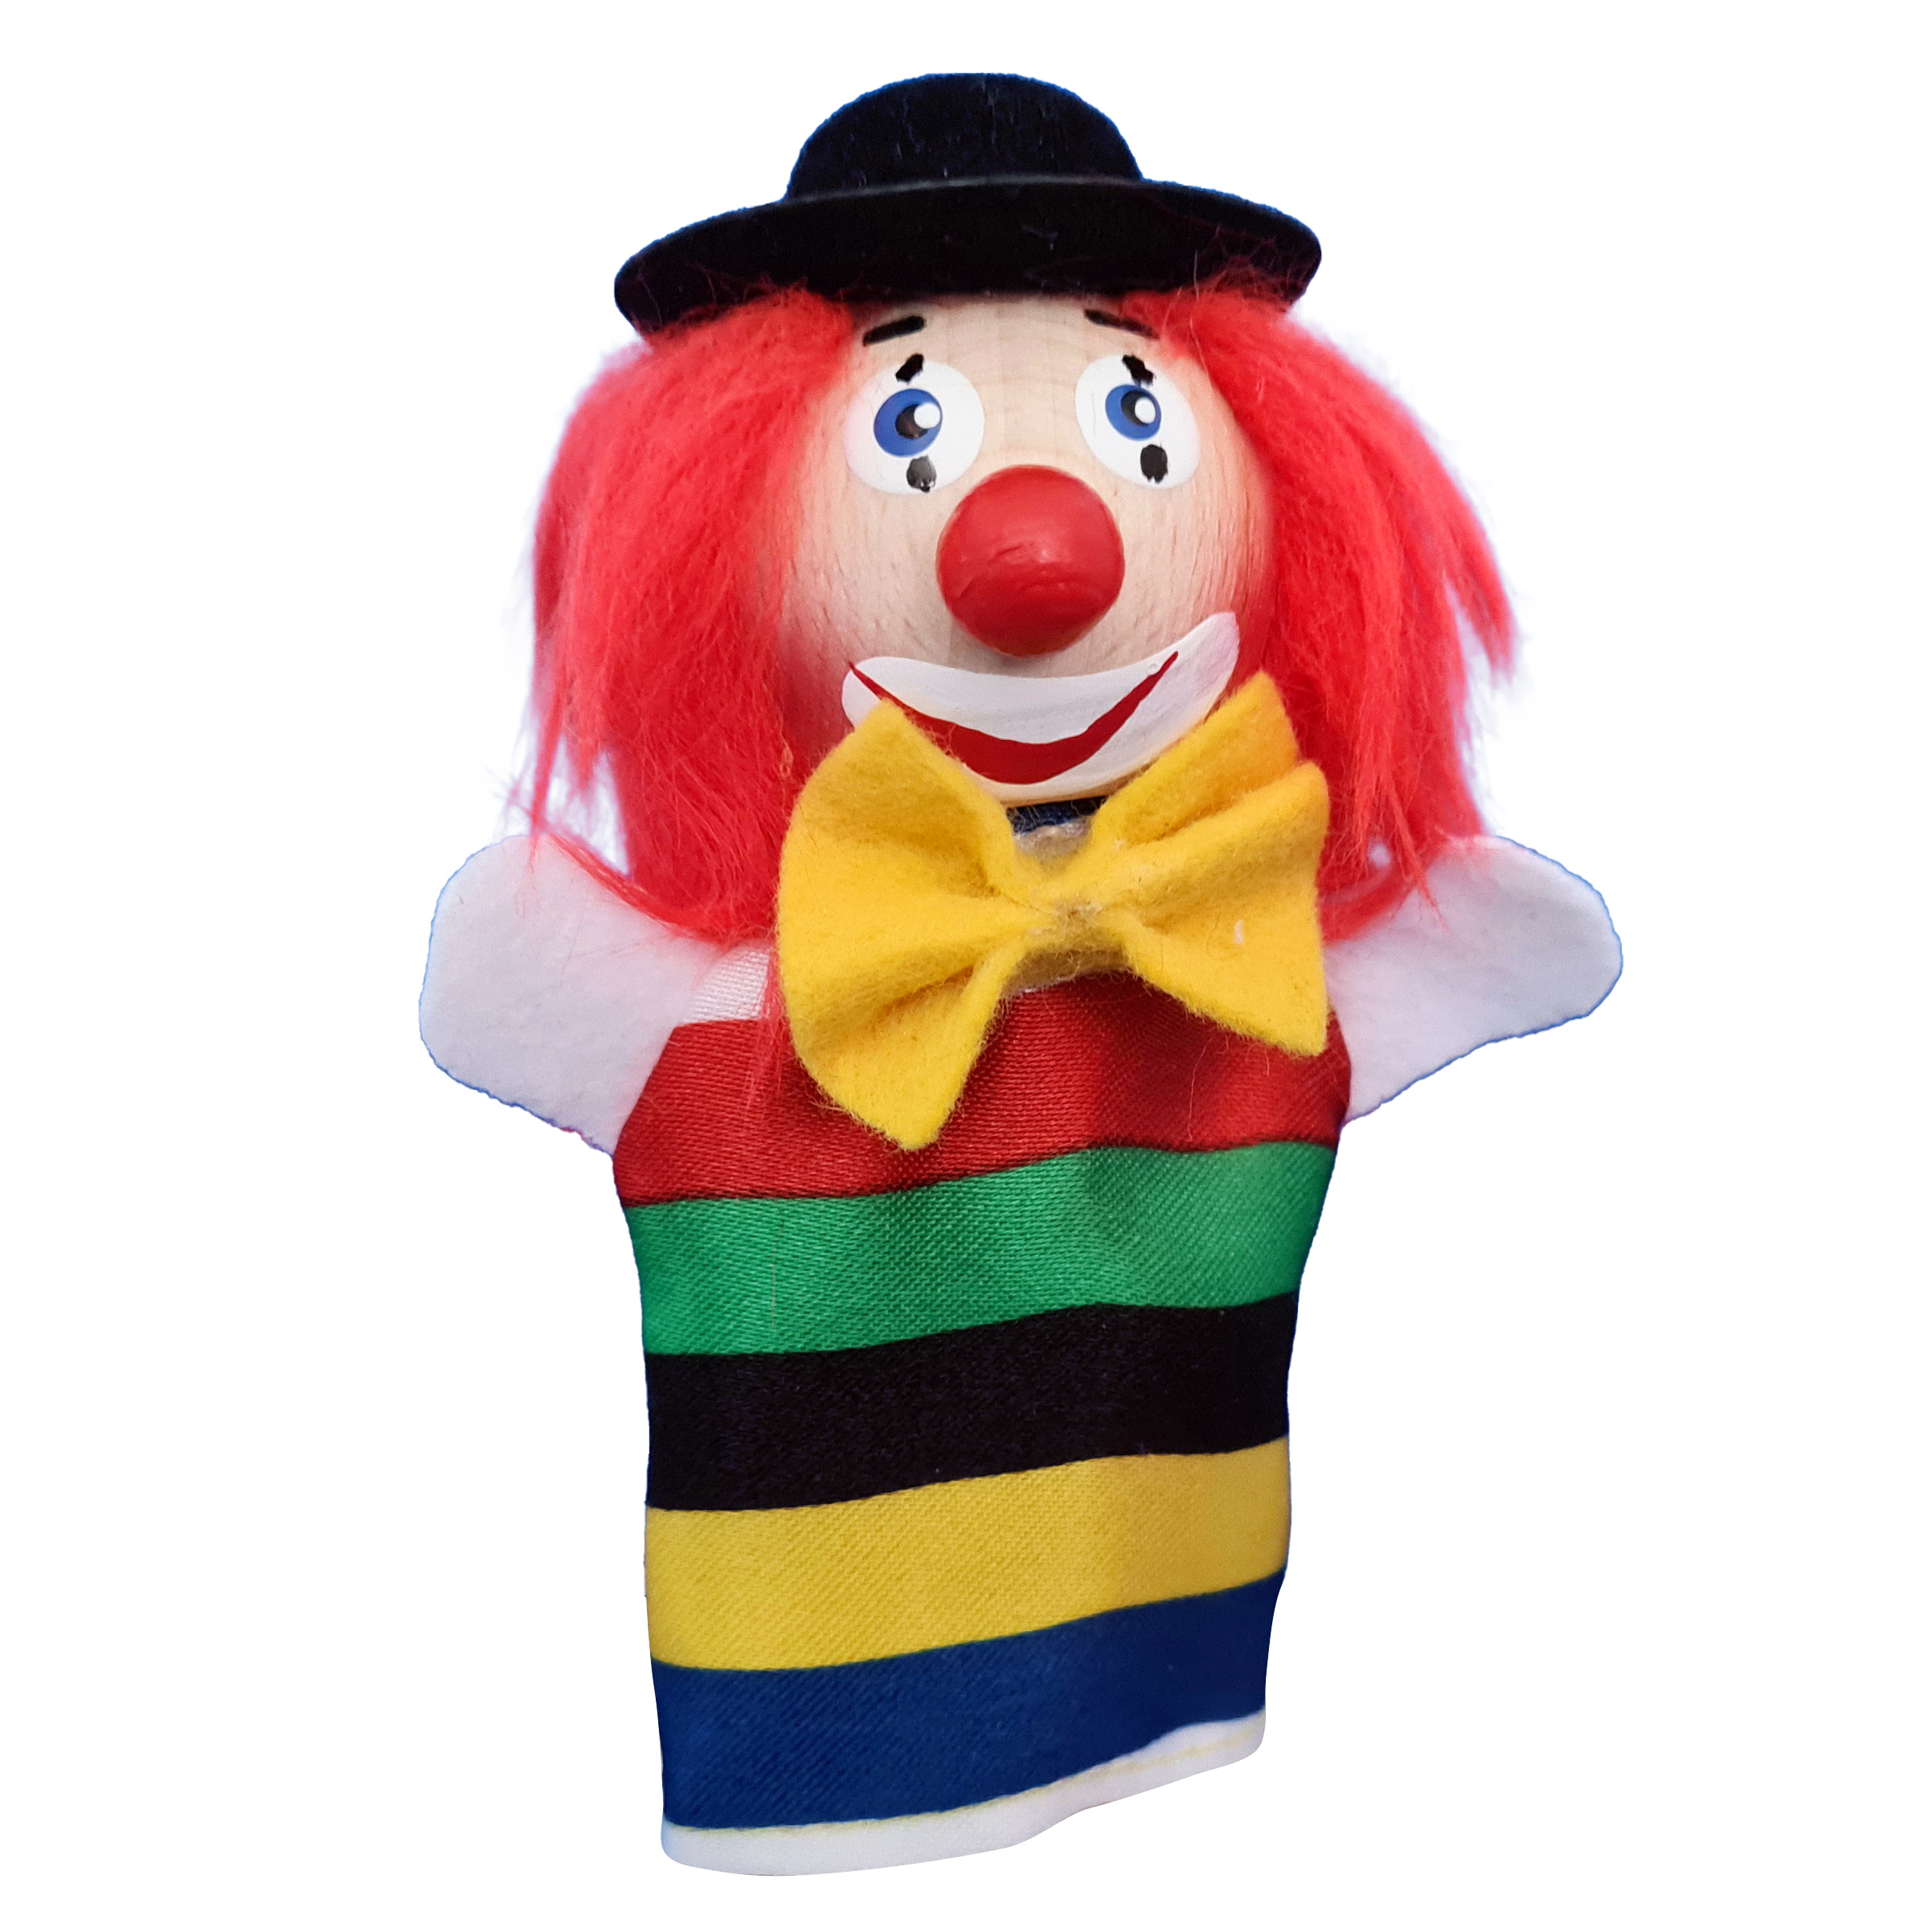 Finger puppet clown (laughing) - KERSA Fipu